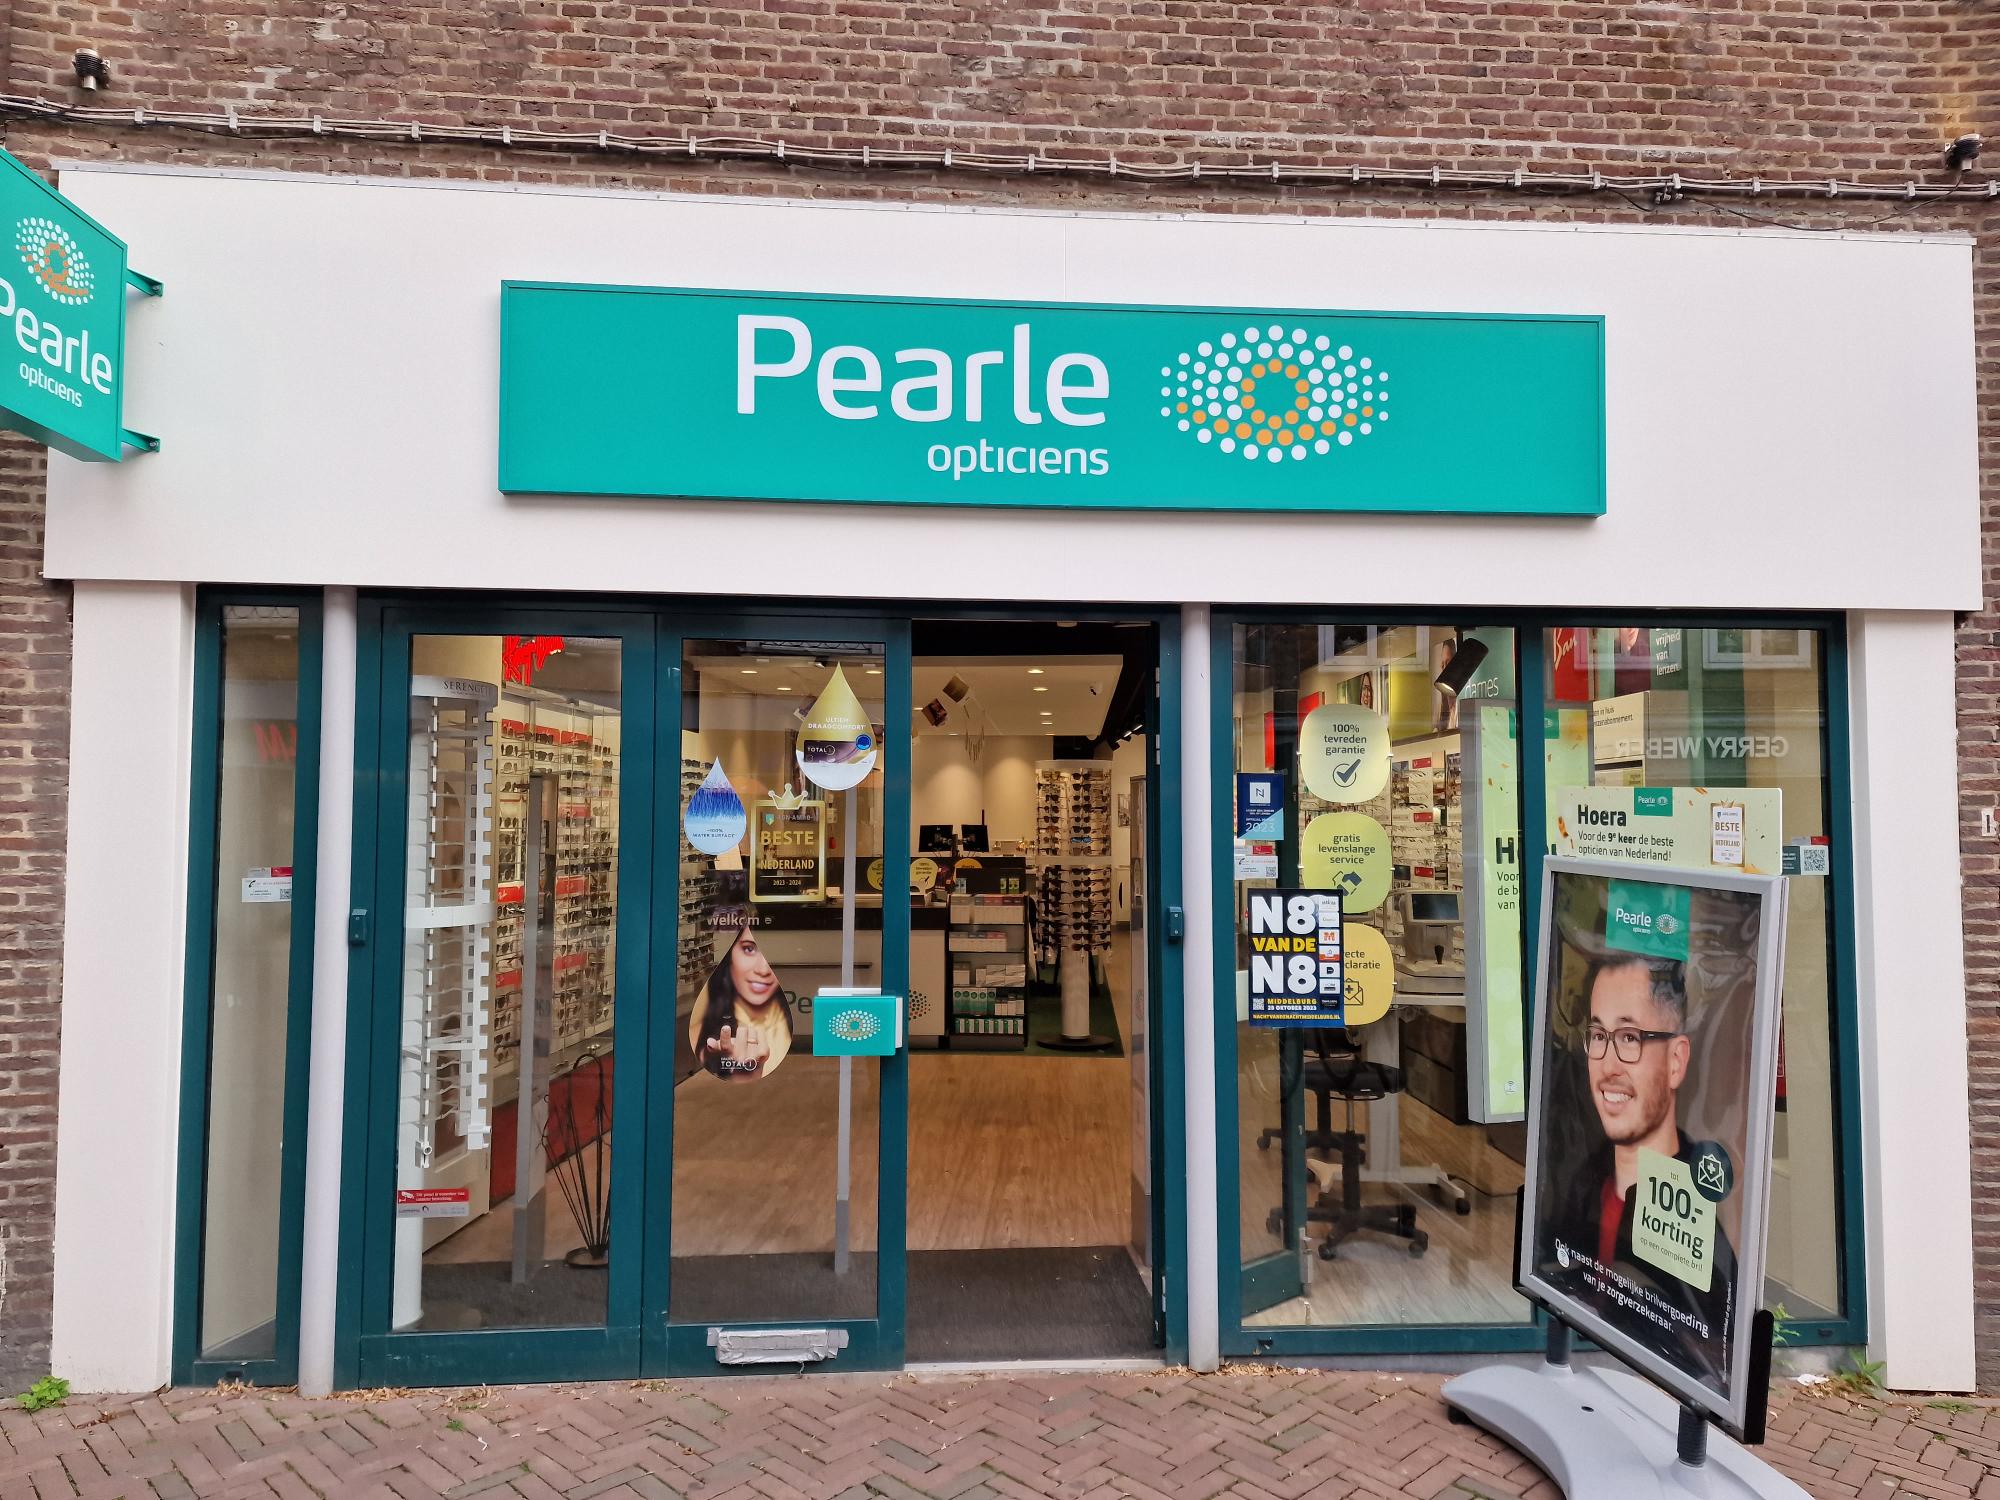 Pearle Opticiens Middelburg